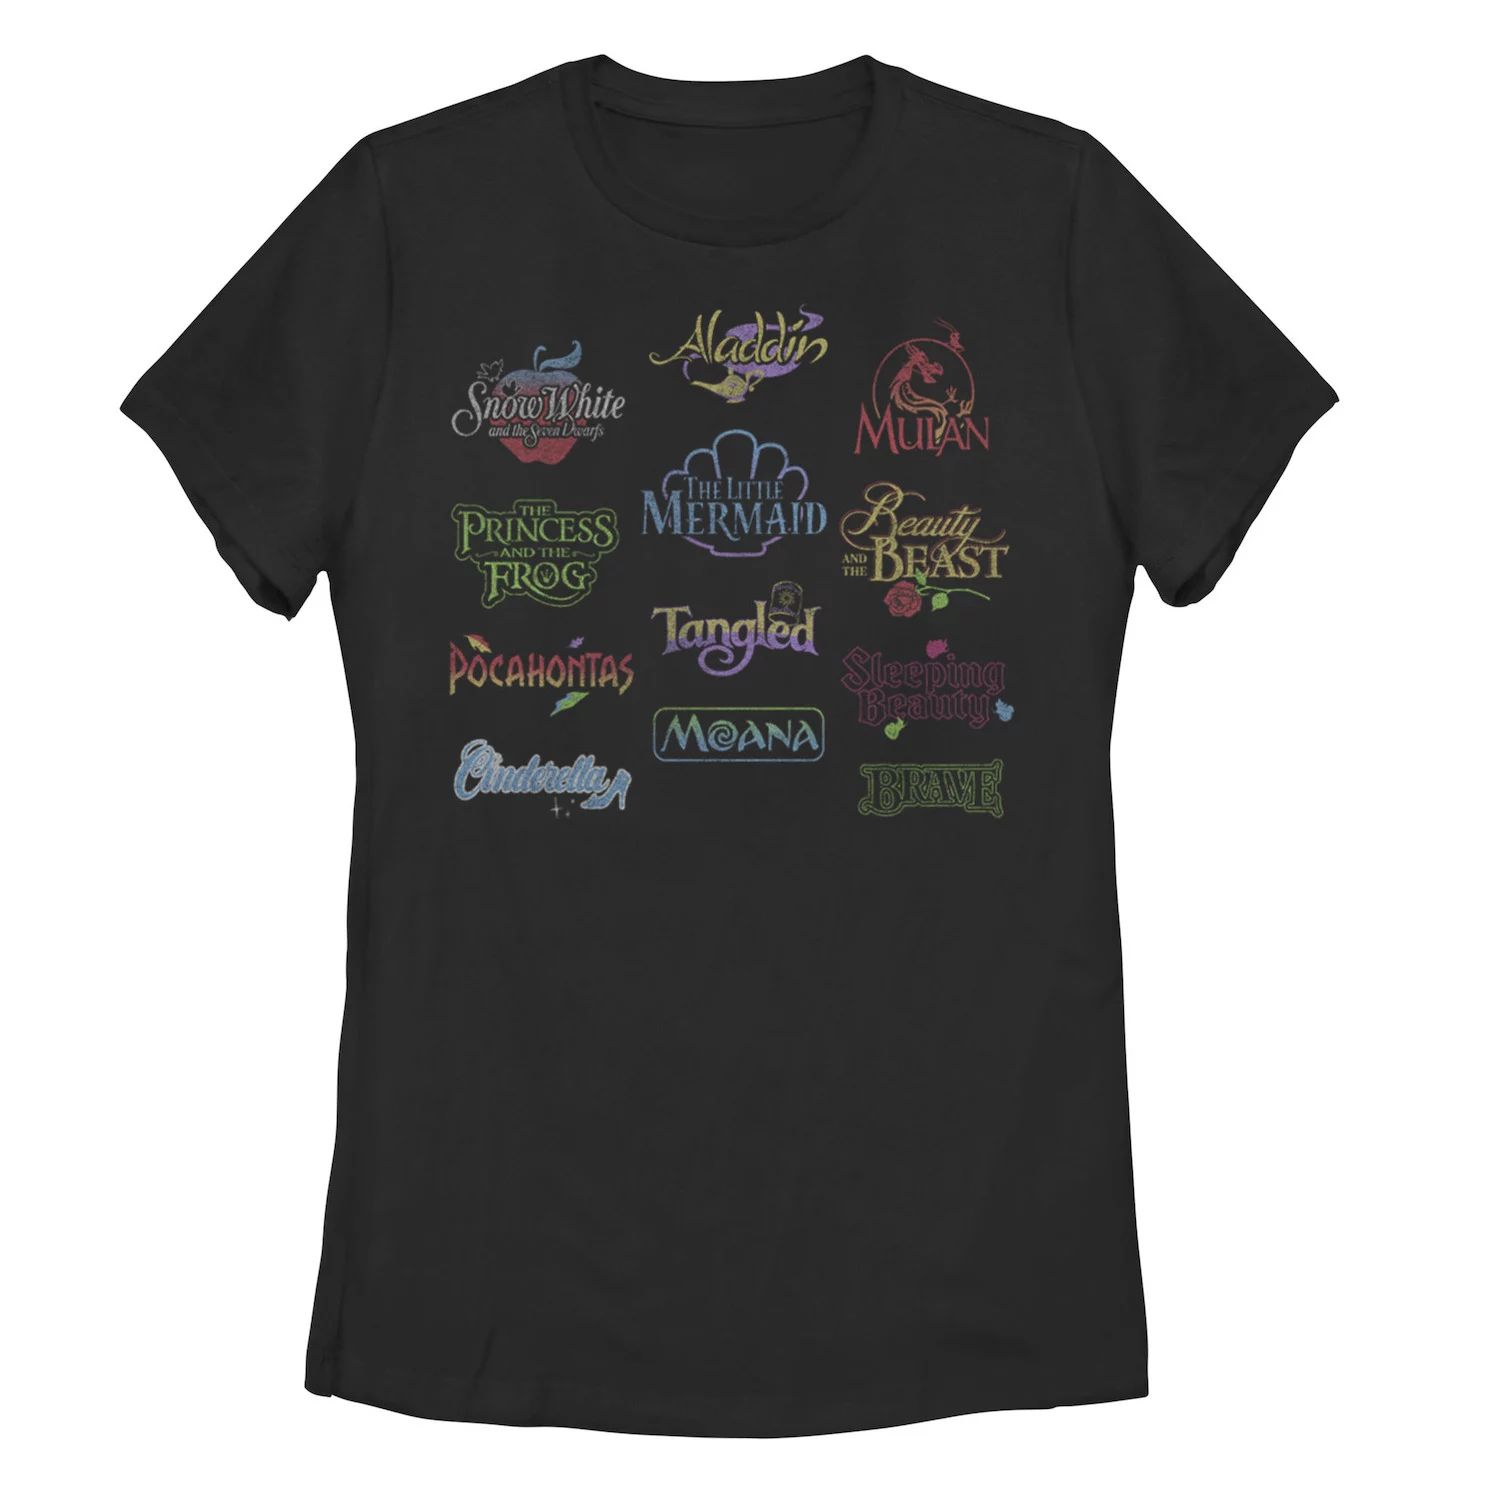 Детская футболка с логотипами фильмов Disney Princesses Licensed Character